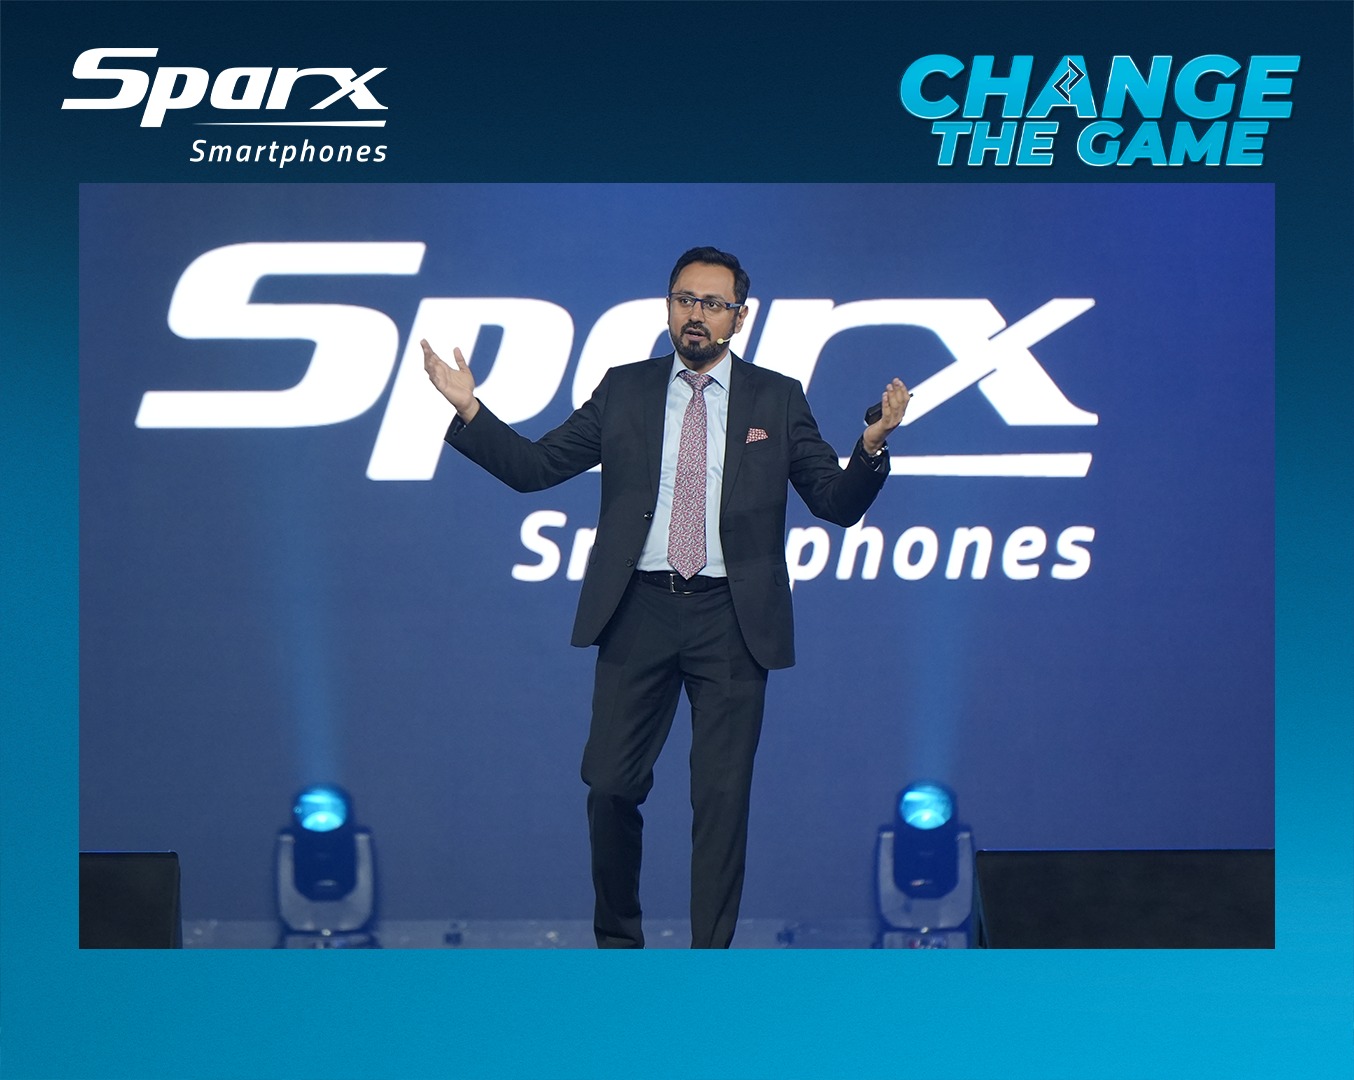 Sparx smartphones